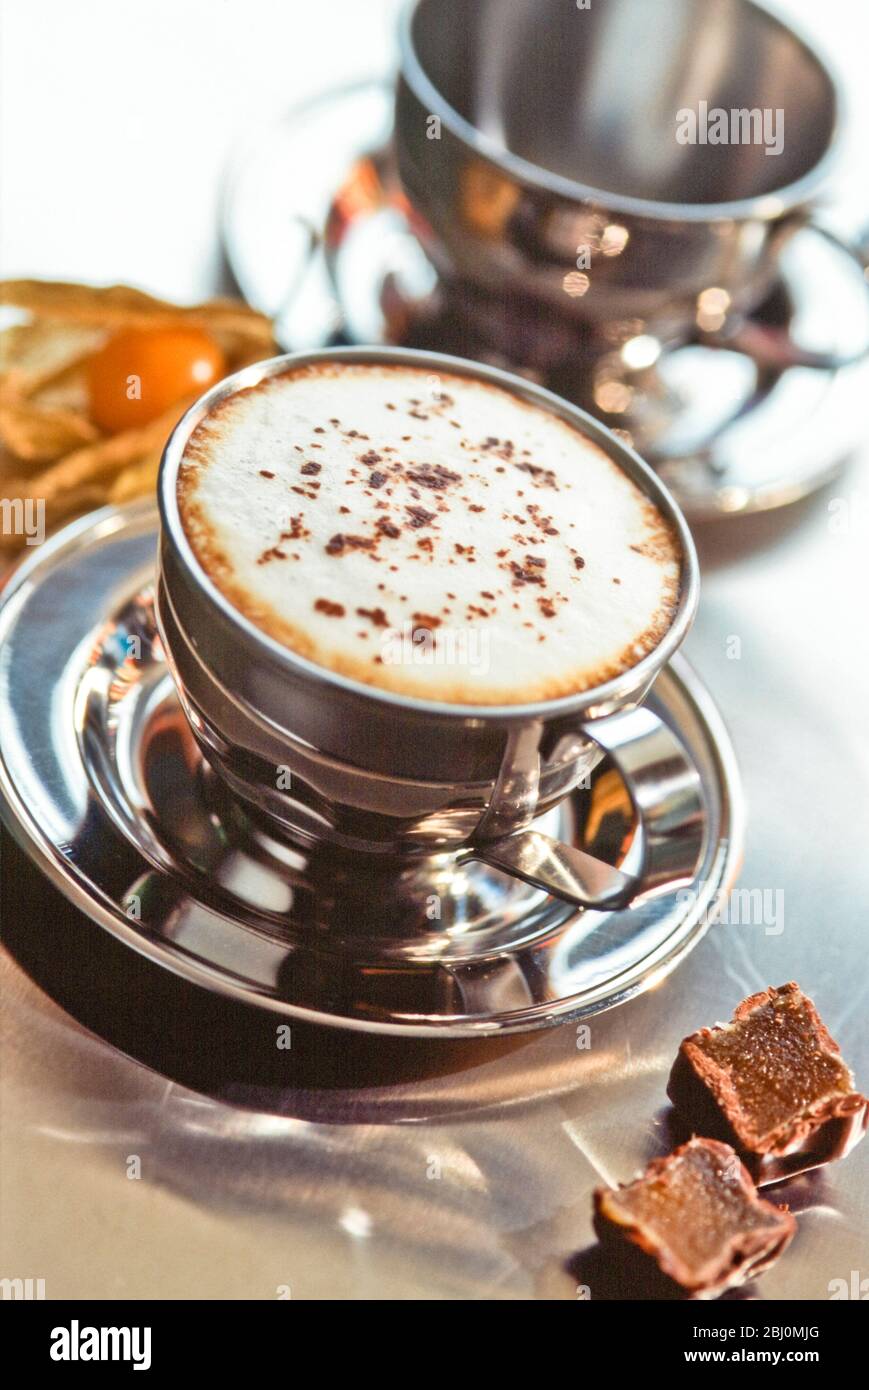 Vaso de cappuccino de acero inoxidable sobre mostrador de metal con fudge de chocolate y ptysalis - Foto de stock